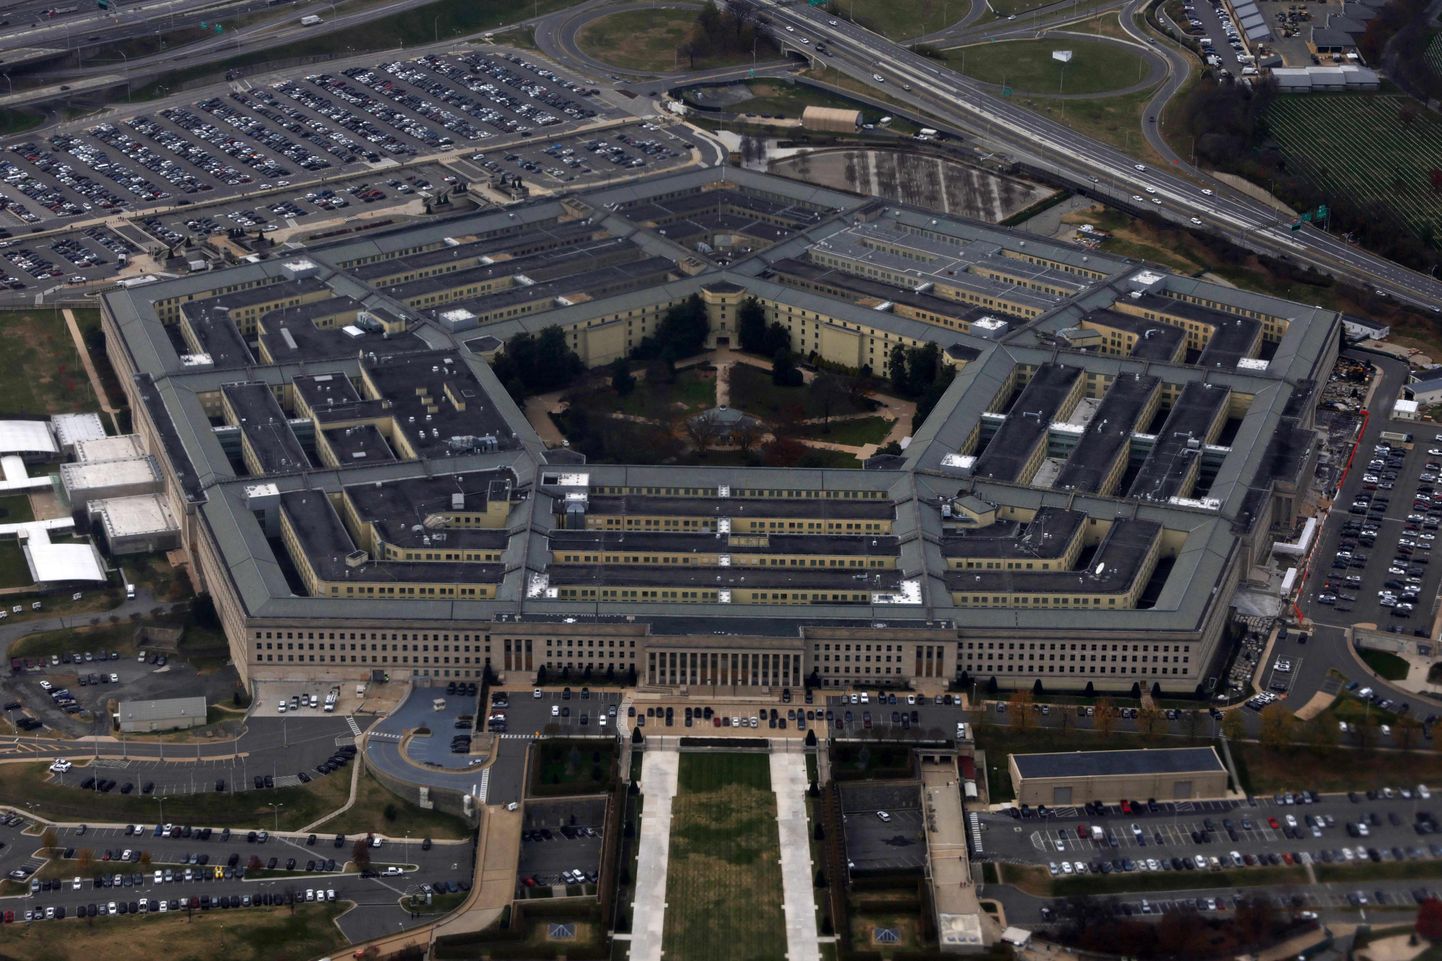 Ameerika Ühendriikide kaitseministeeriumi peakorter Pentagon